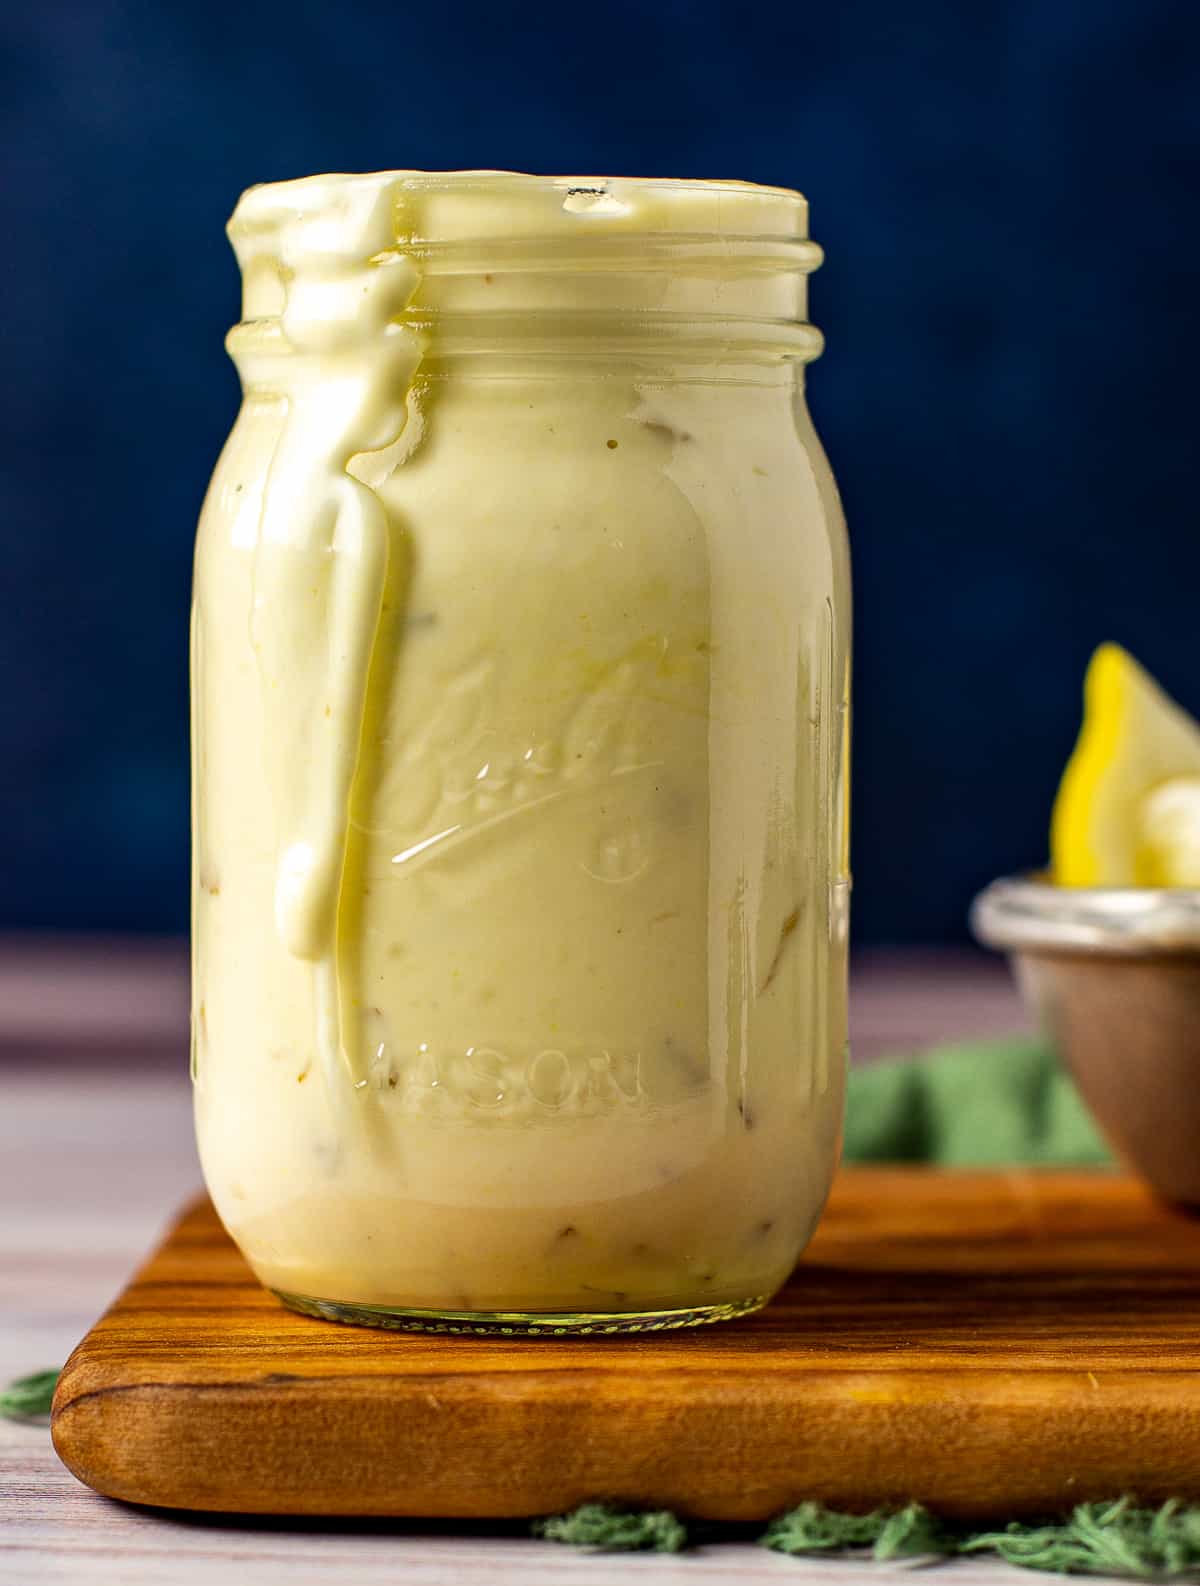 vegan tartar sauce in glass jar